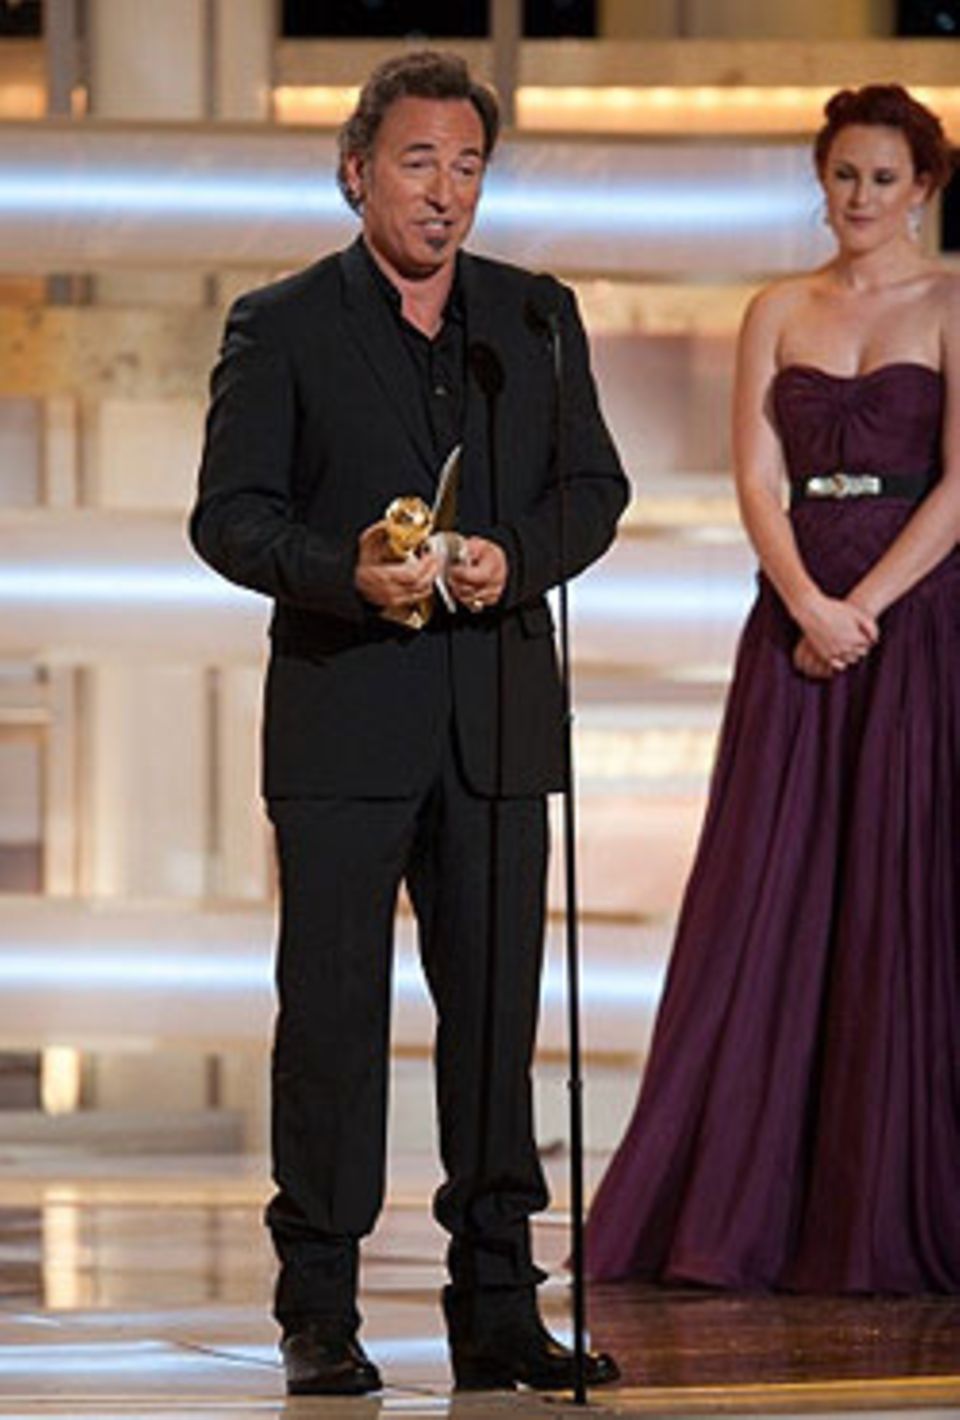 Bruce Springsteen bekam den Preis für den besten Filmsong. "The Wrestler" ist der Titelsong aus dem gleichnamigen Film mit Mickey Rourke.